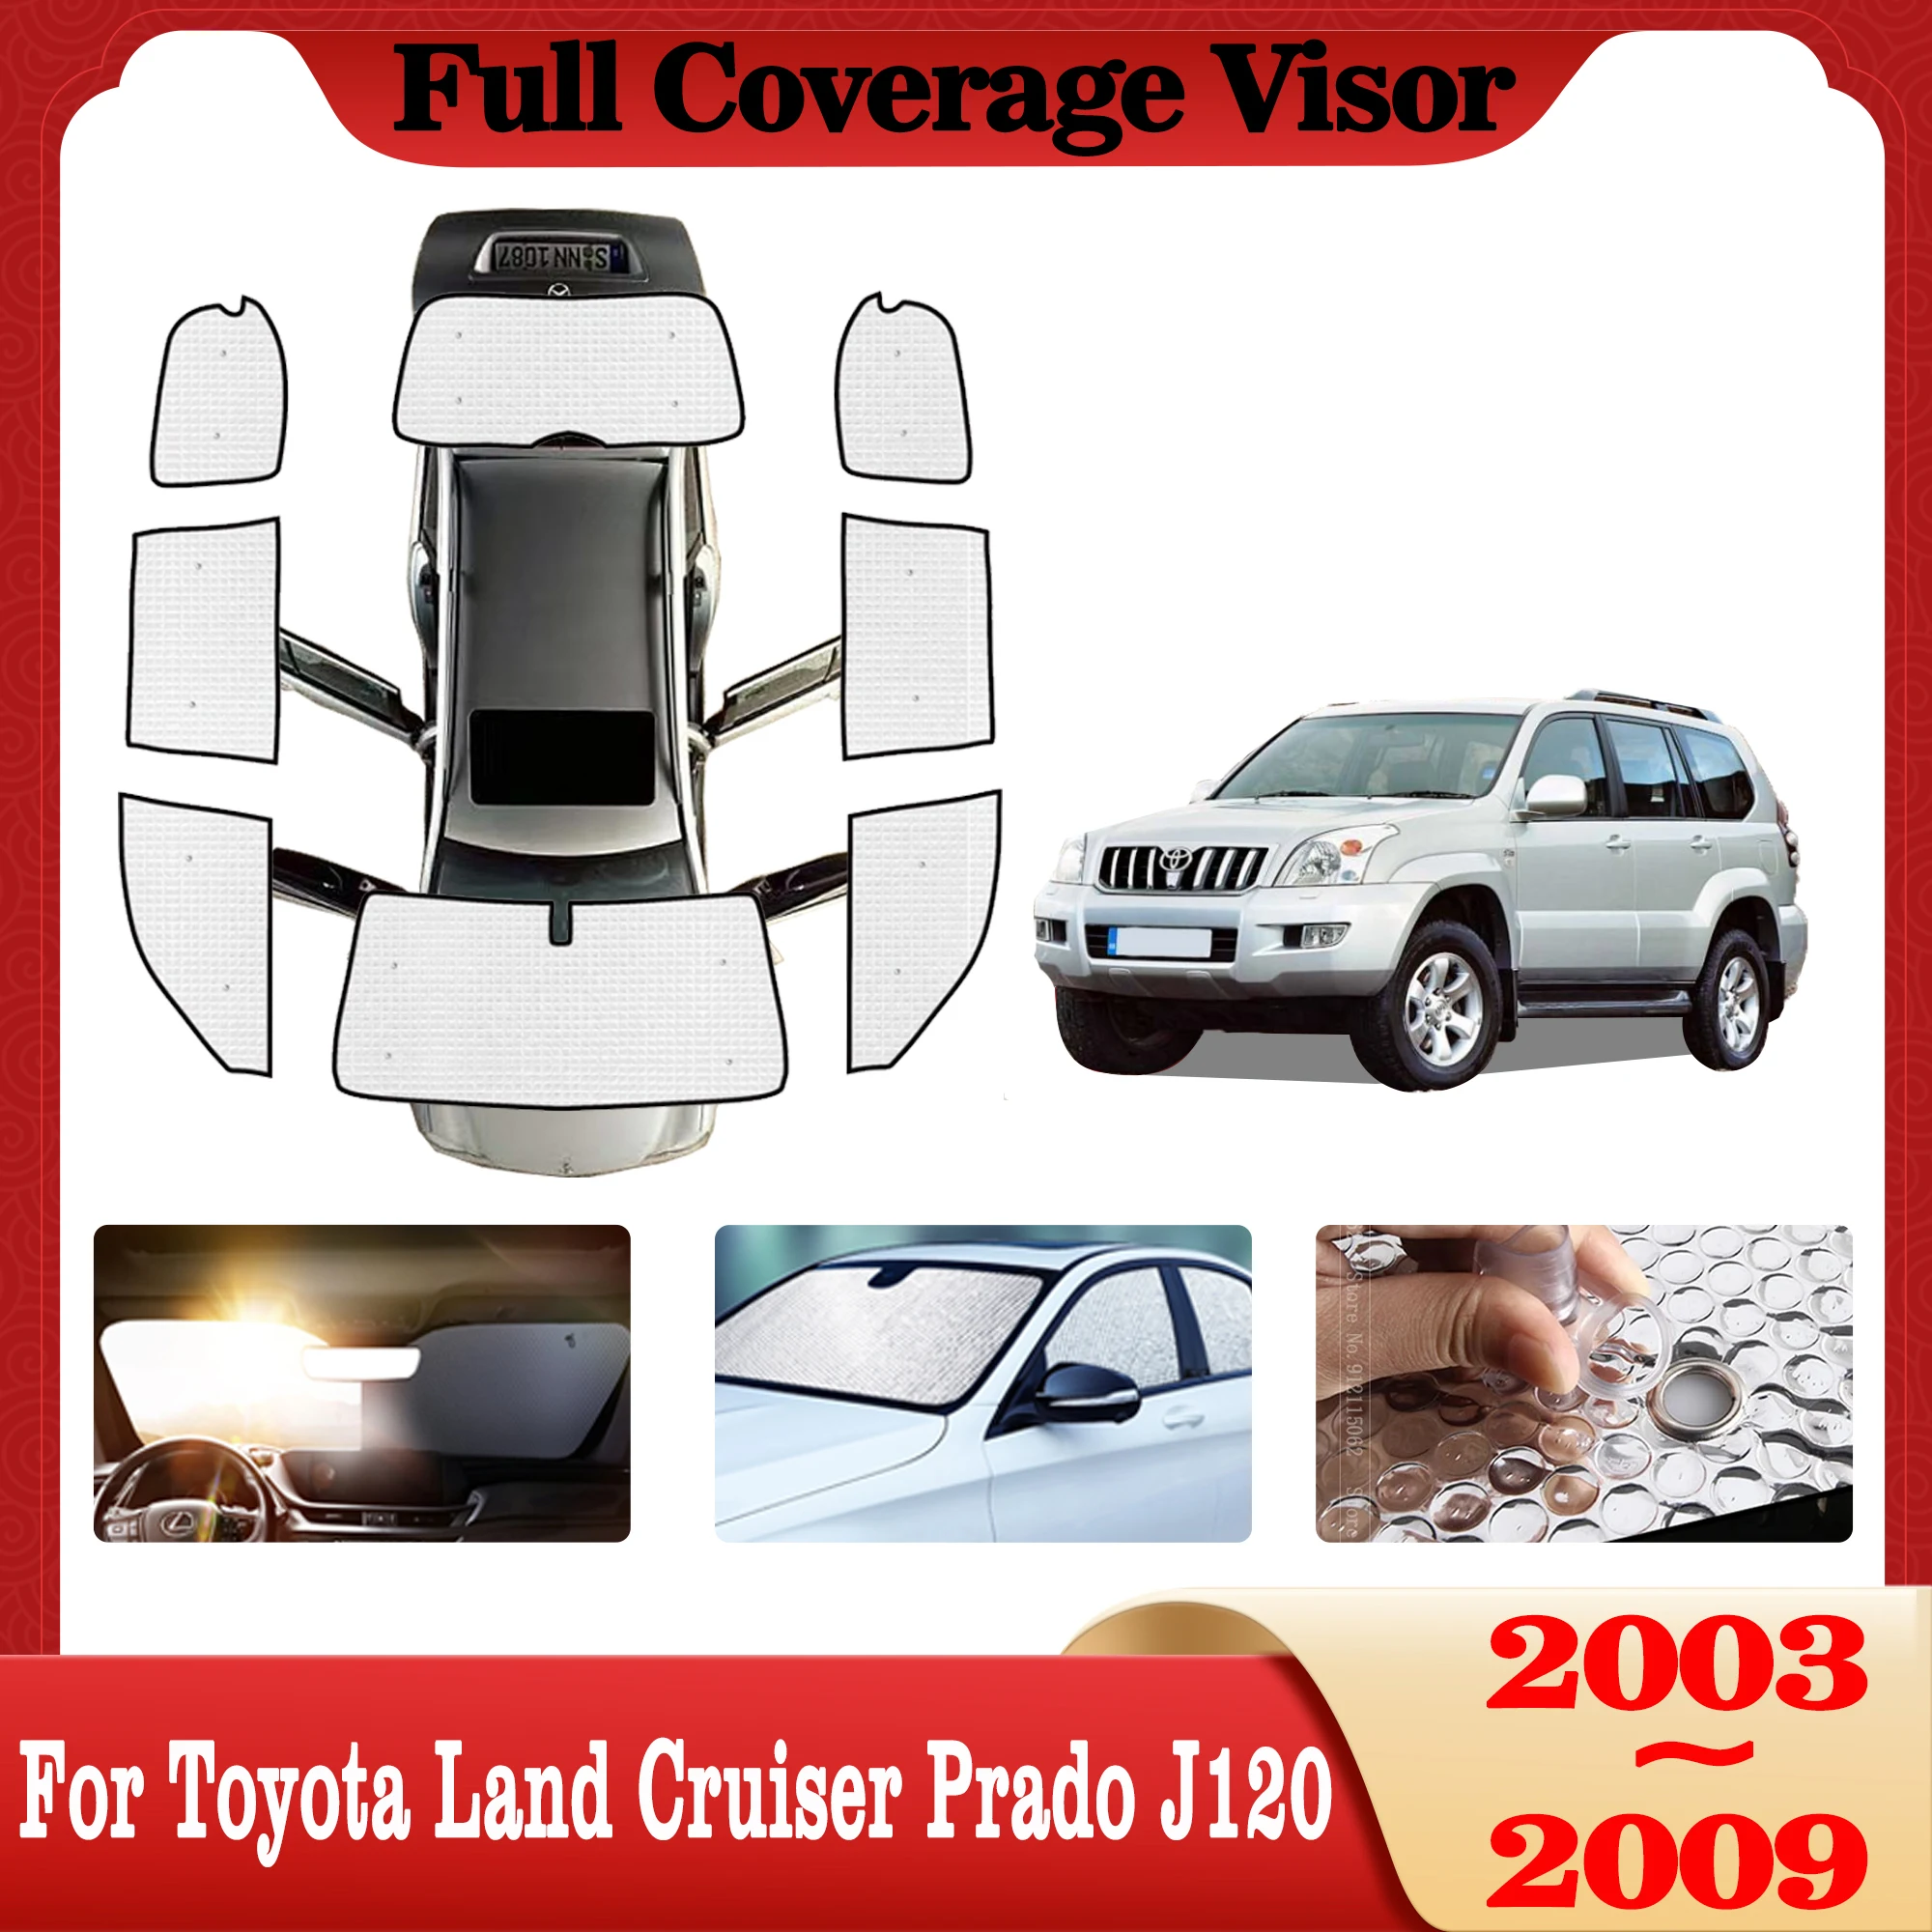 

Аксессуары для Toyota Land Cruiser Prado 120, J120 LC120 FJ120 2003 ~ 2009, полное покрытие, солнцезащитные очки, солнцезащитный козырек